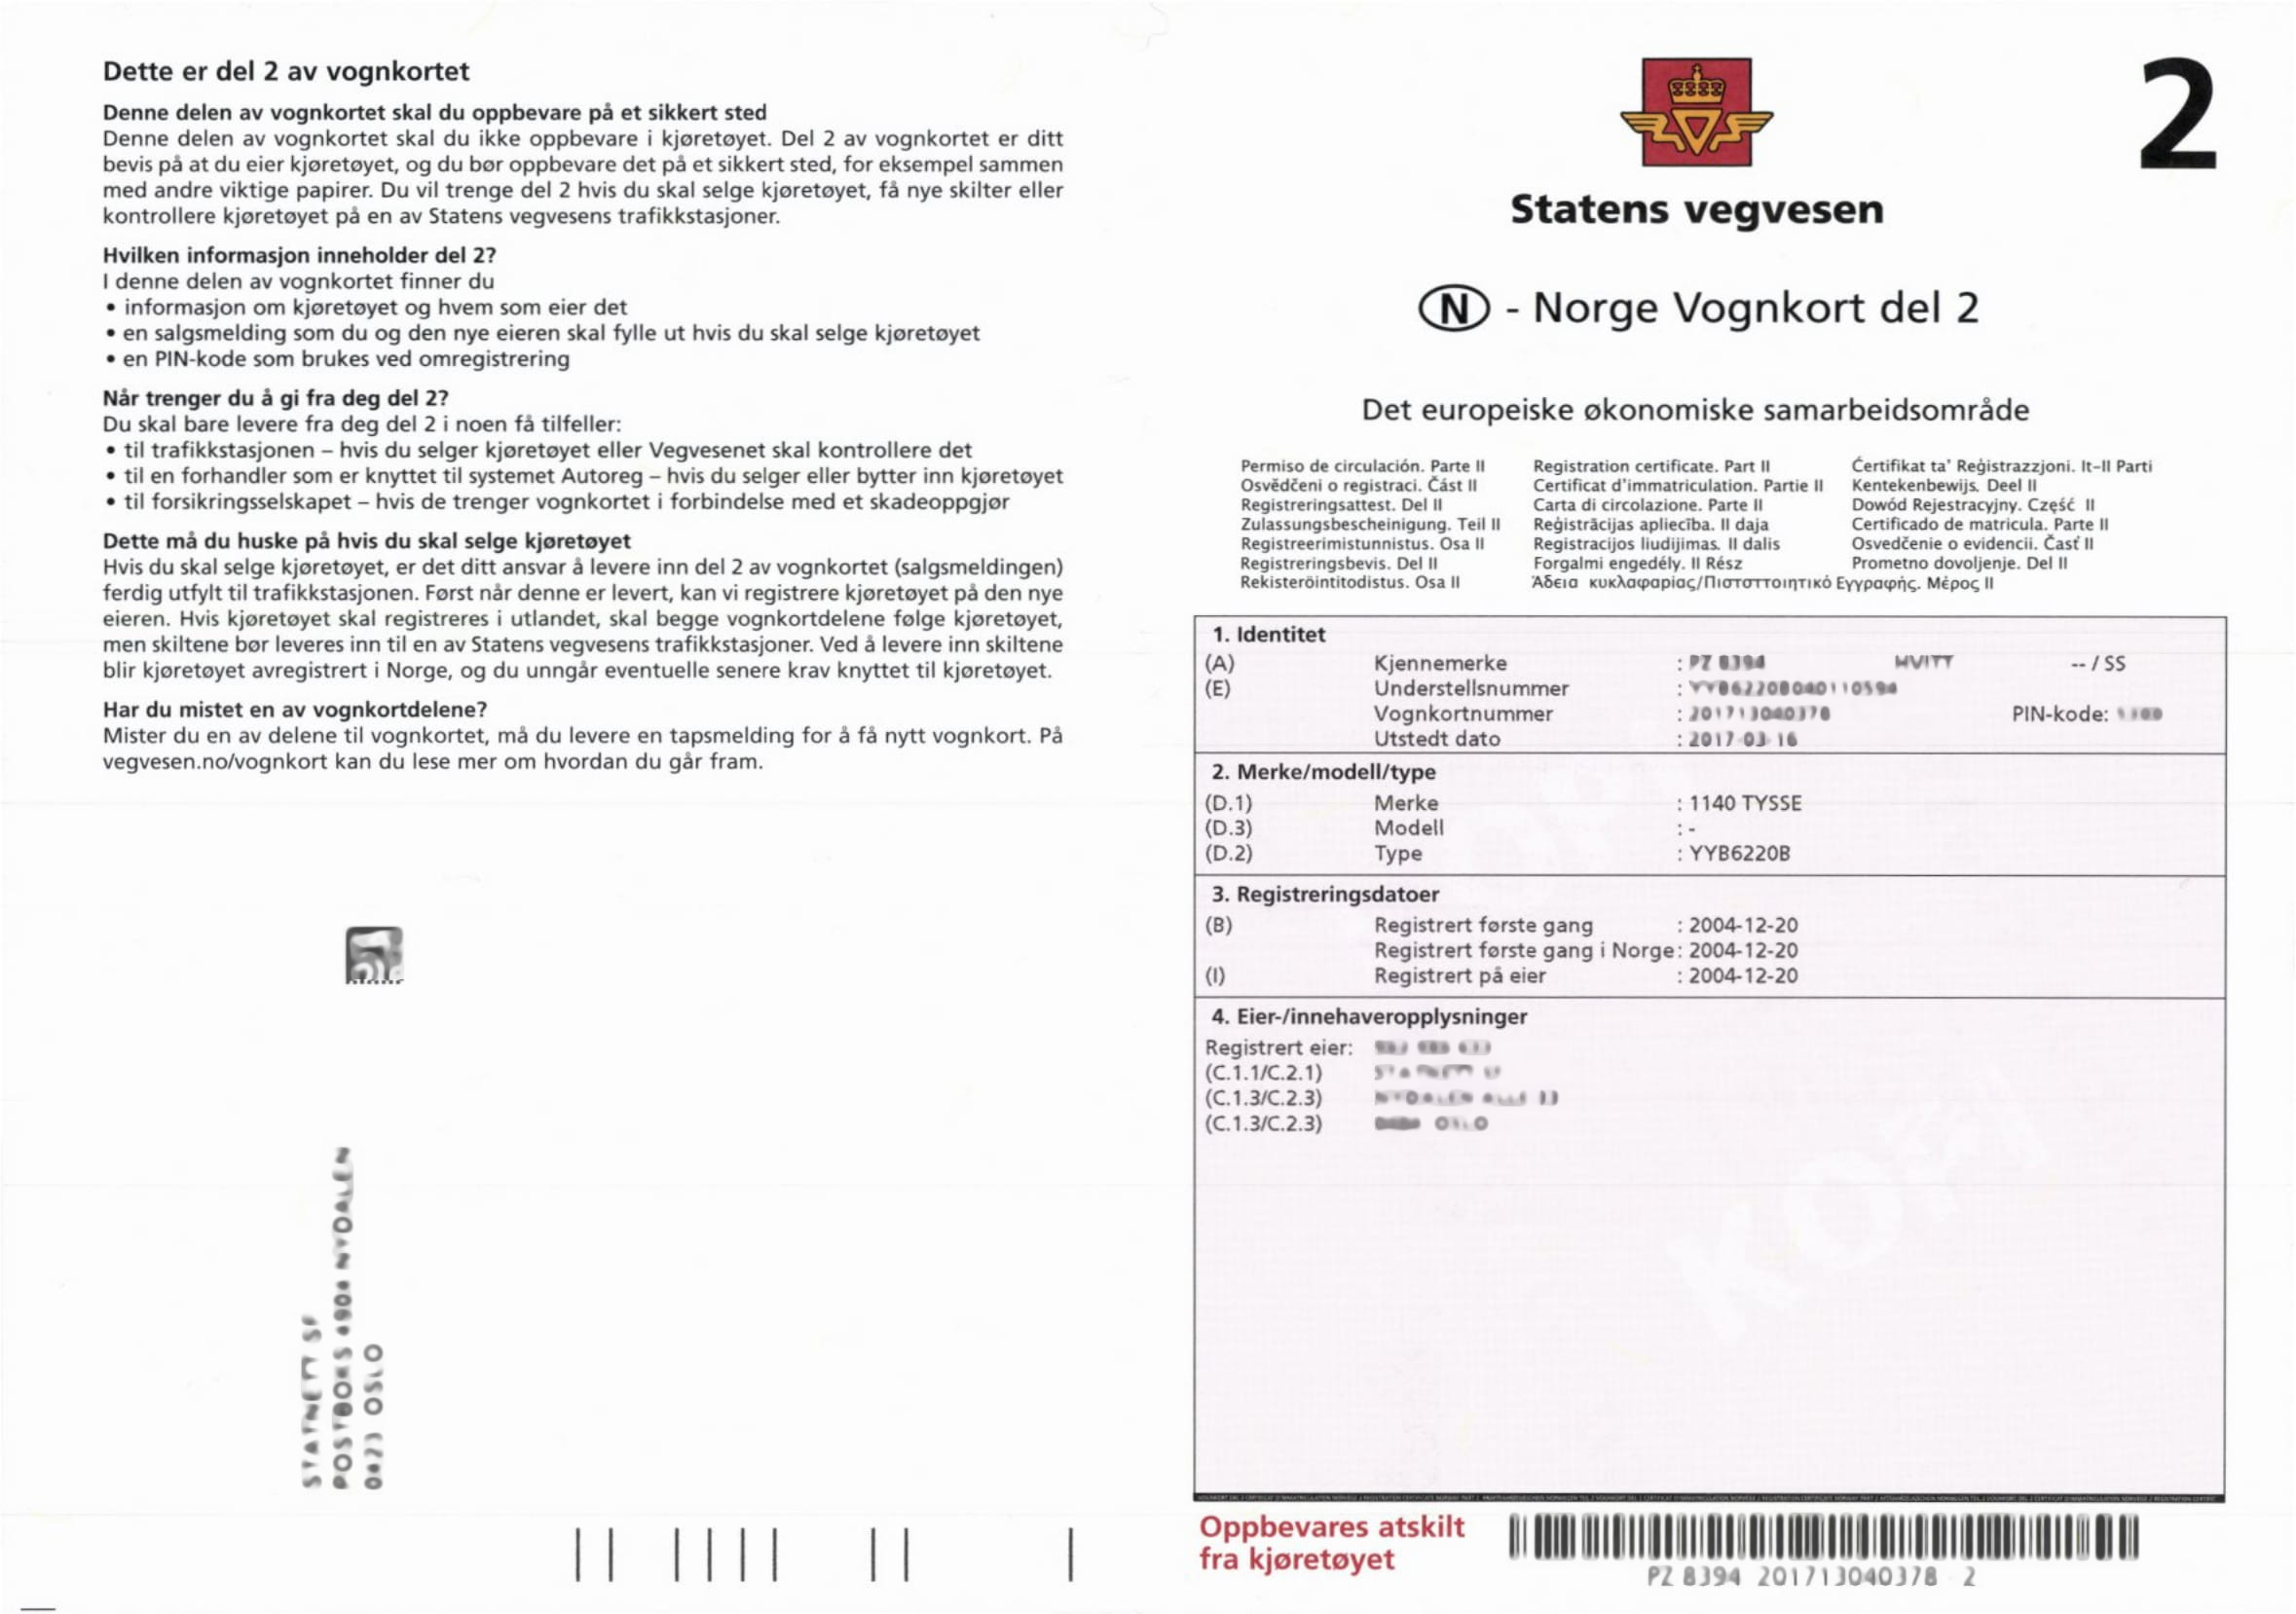 Norge Vognkort del 2.